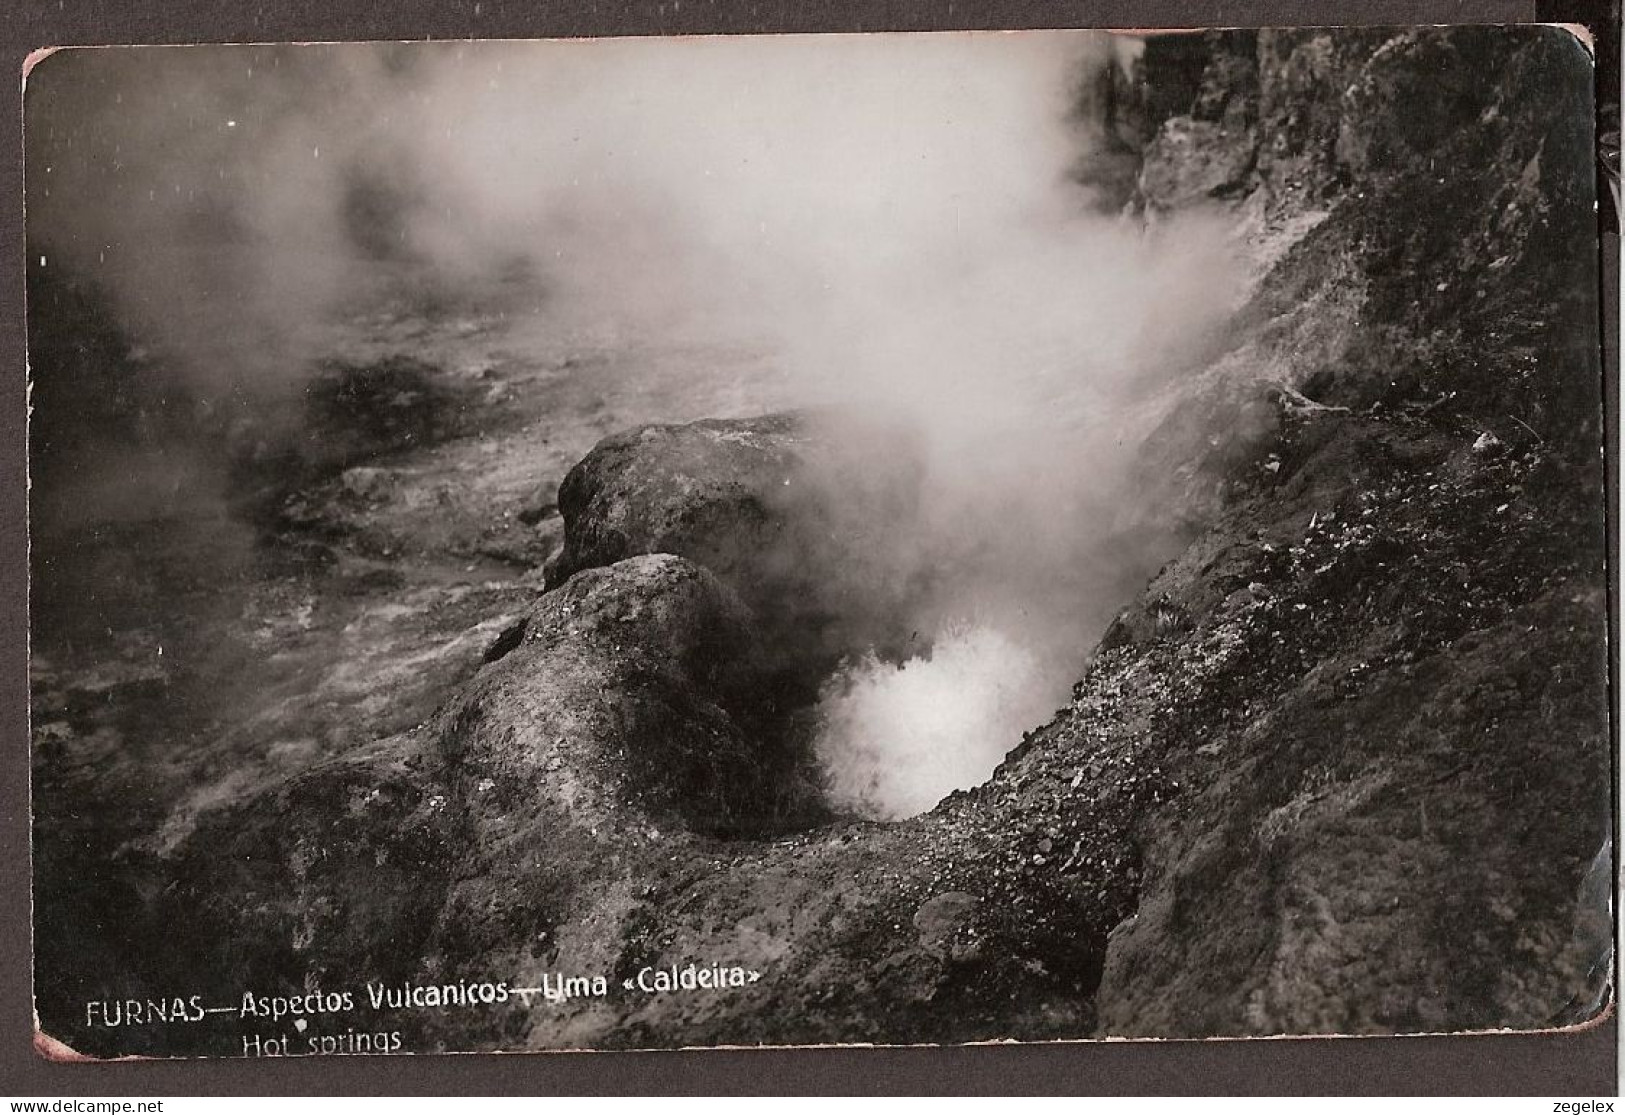 Furnas - Aspectos Vulcanicos - Uma "Caldeira"- Hot Springs - Vulcano - Açores